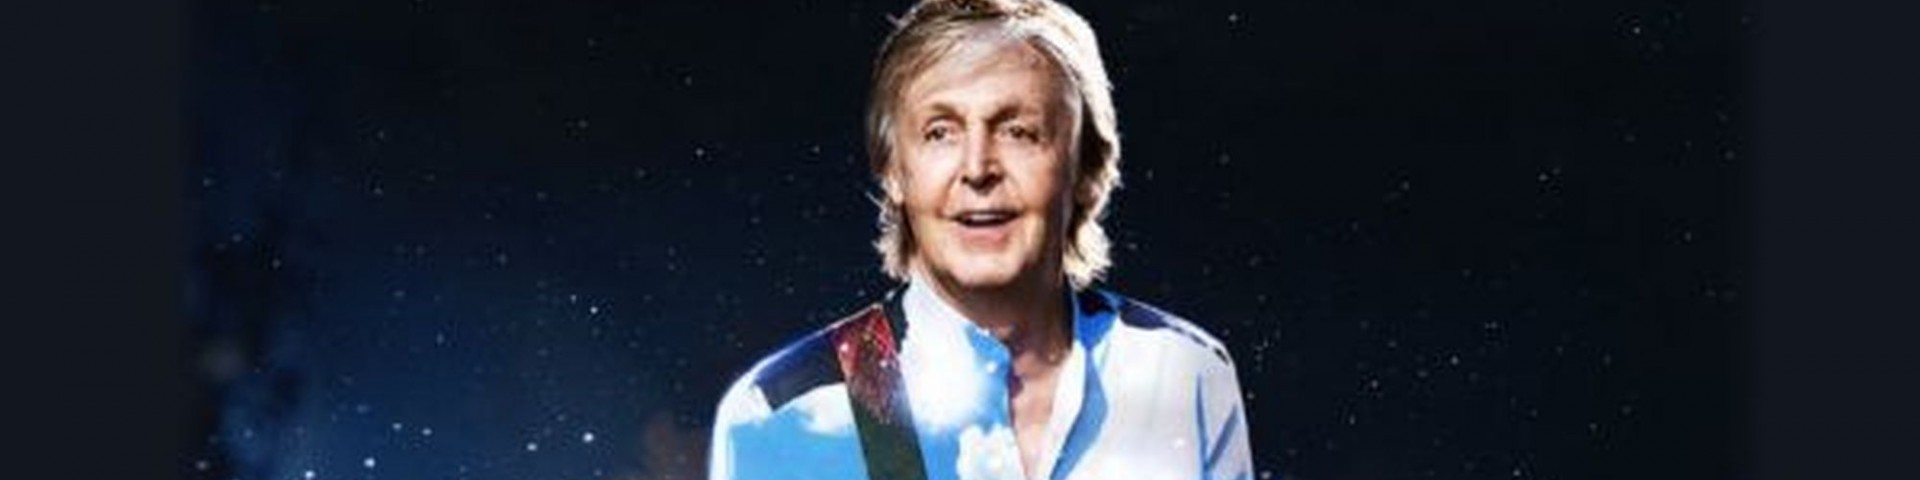 Paul McCartney contrario ai voucher per i concerti: “Ridate i soldi ai fan”